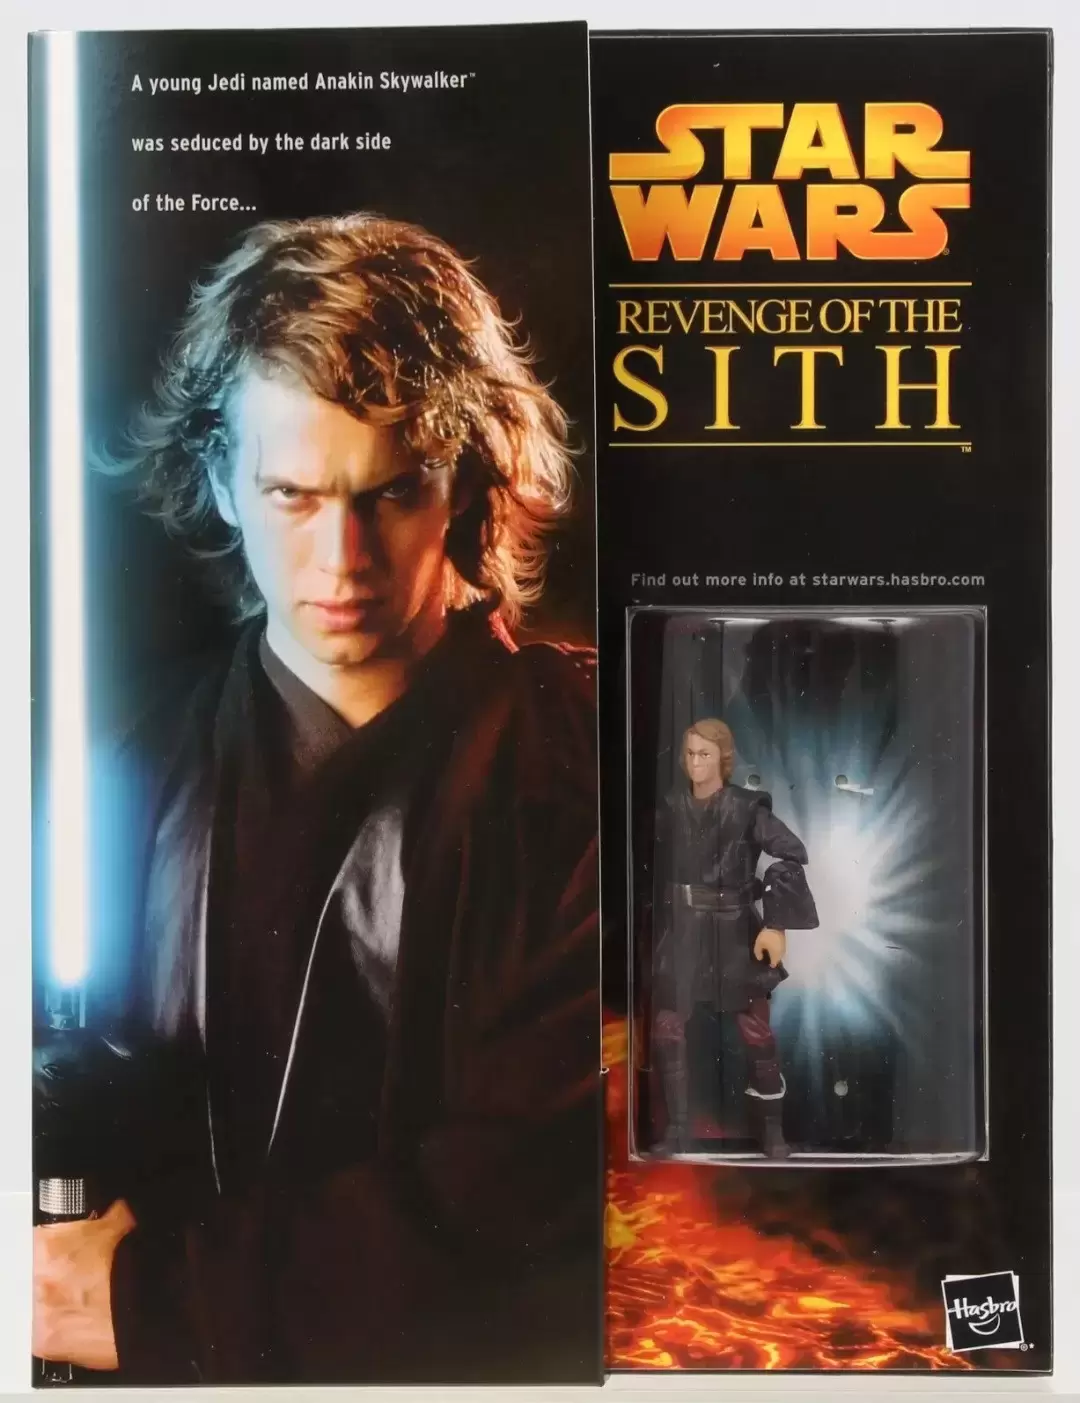 Revenge of the Sith - Anakin Skywalker/Darth Vader Press Kit